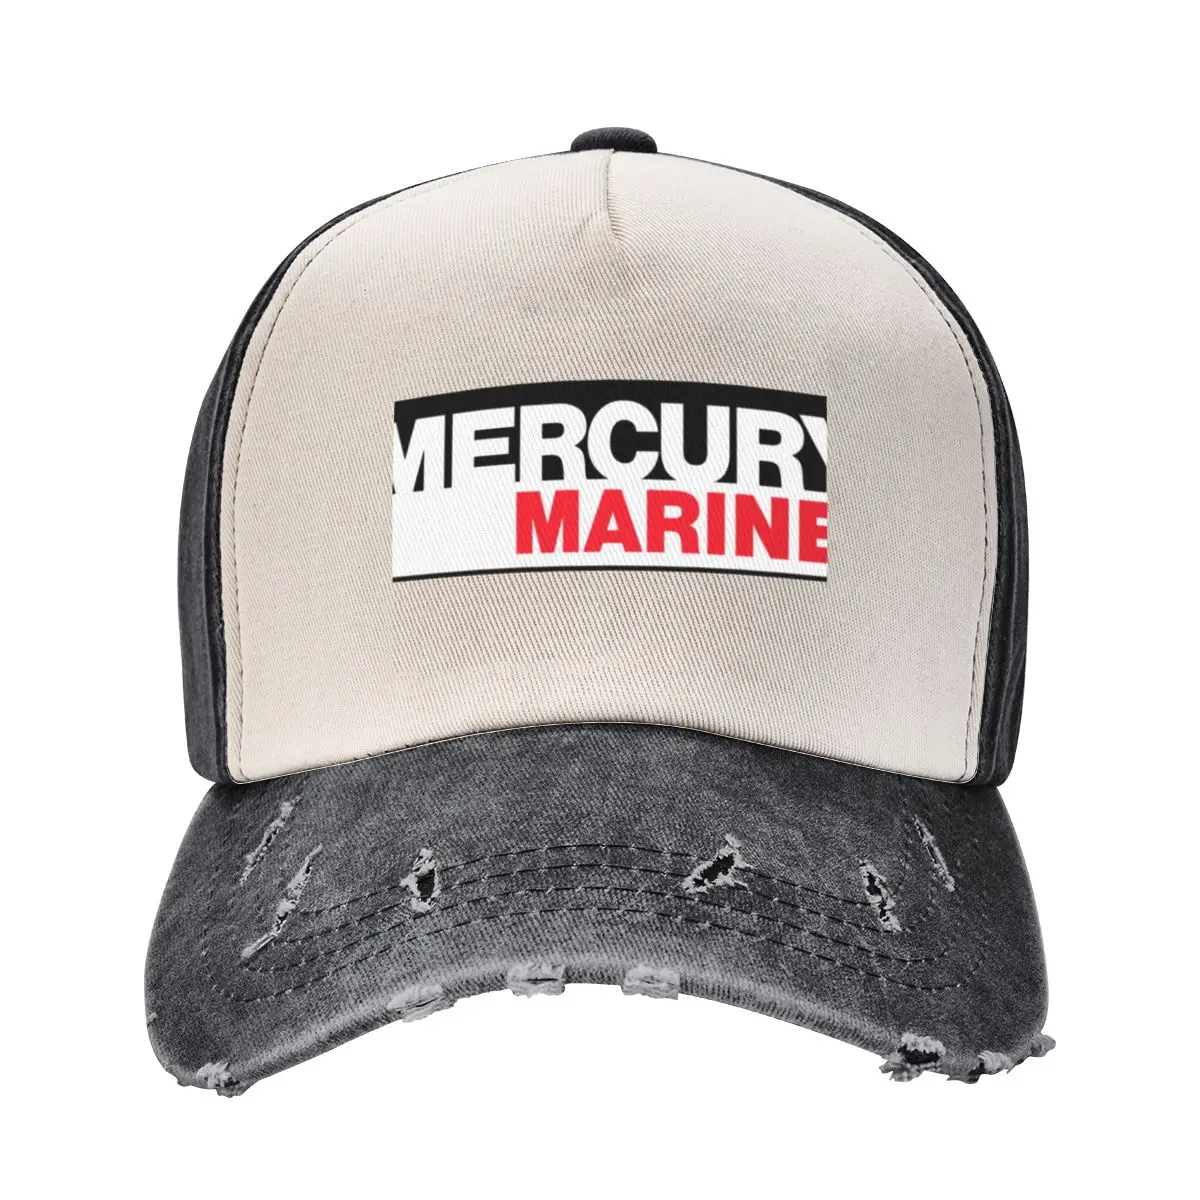 Homens clássico Kekhaefer Mercury Marine Outboards logotipo boné de beisebol, chapéu de aniversário da menina, novo, anos 80